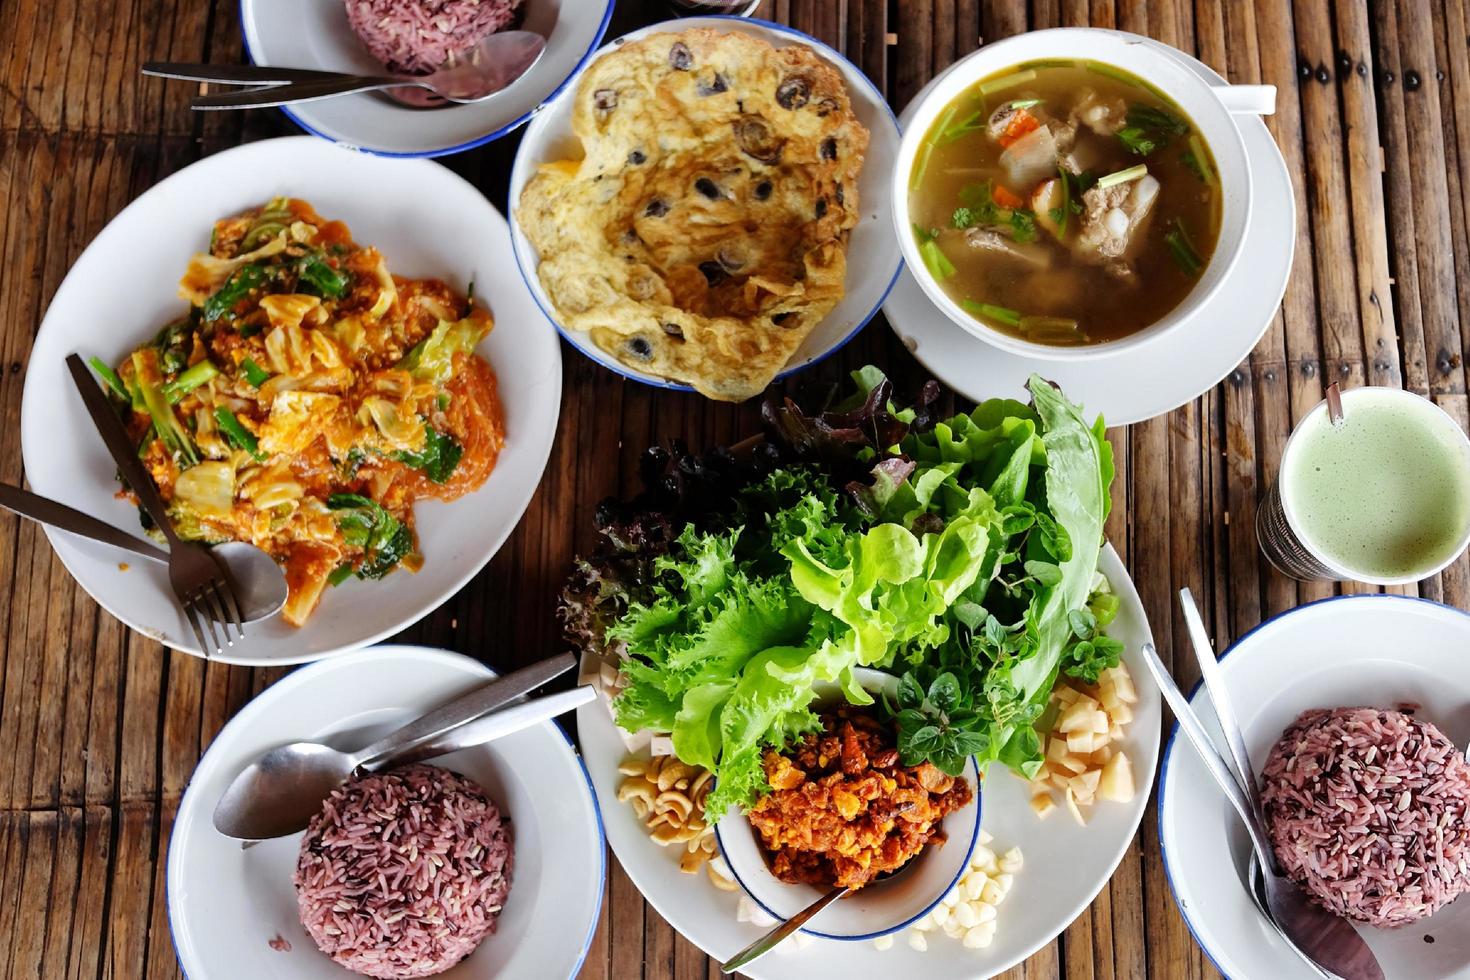 traditioneel en cultuur Thais voedsel rijst, varkensvlees omelet met bladerdeeg bal paddestoelen, gerookt garnaal Chili dip met groenten, varkensvlees Reserve rib pittig soep en roeren gebakken sukiyaki met kip Aan hout tafel foto